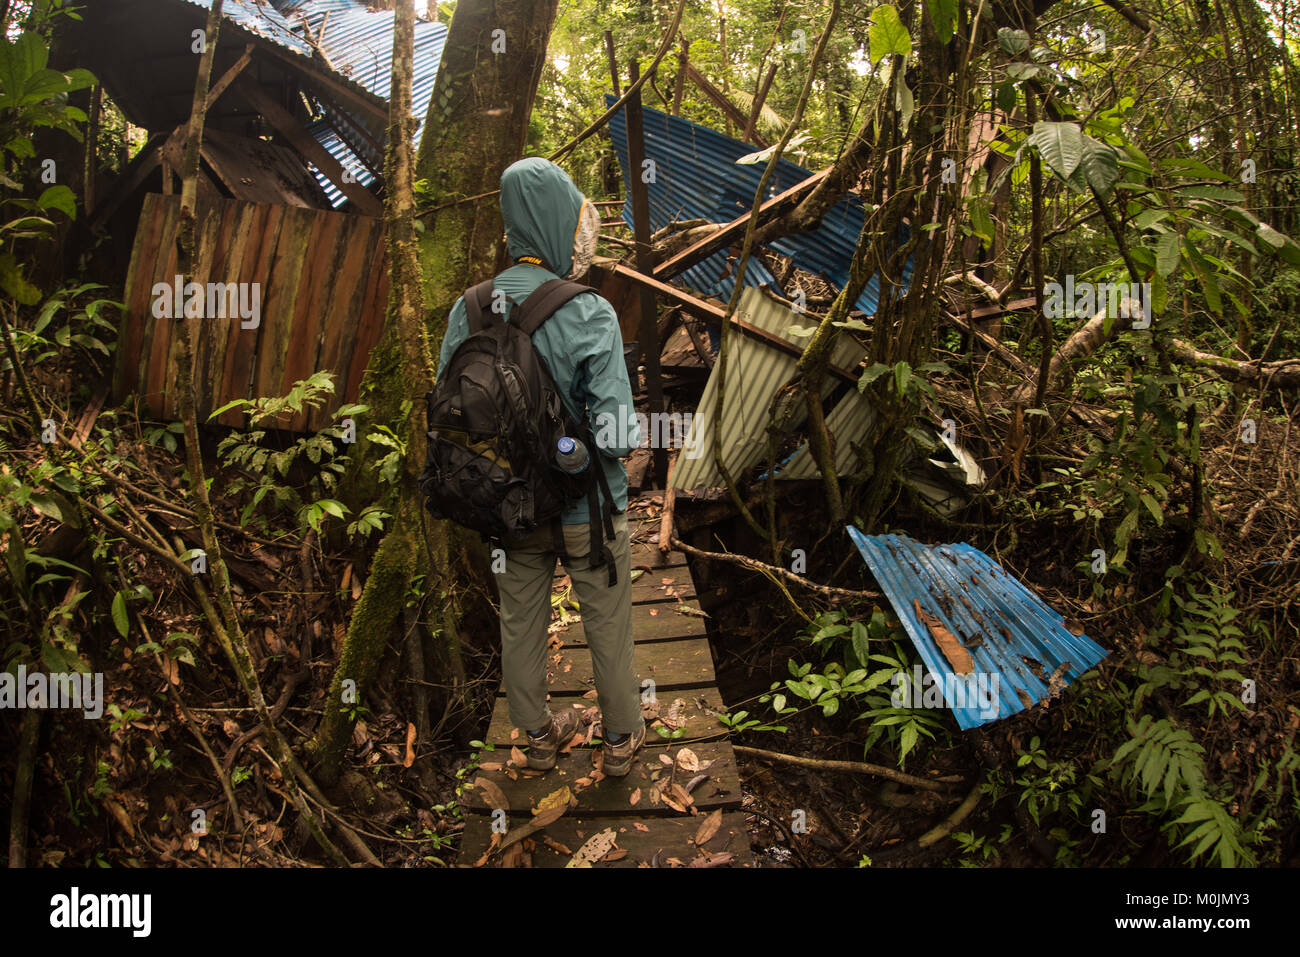 Ein Wanderer auf der Suche nach einer alten Ruine im Regenwald des Amazonas, den Dschungel langsam zurückfordern. Stockfoto